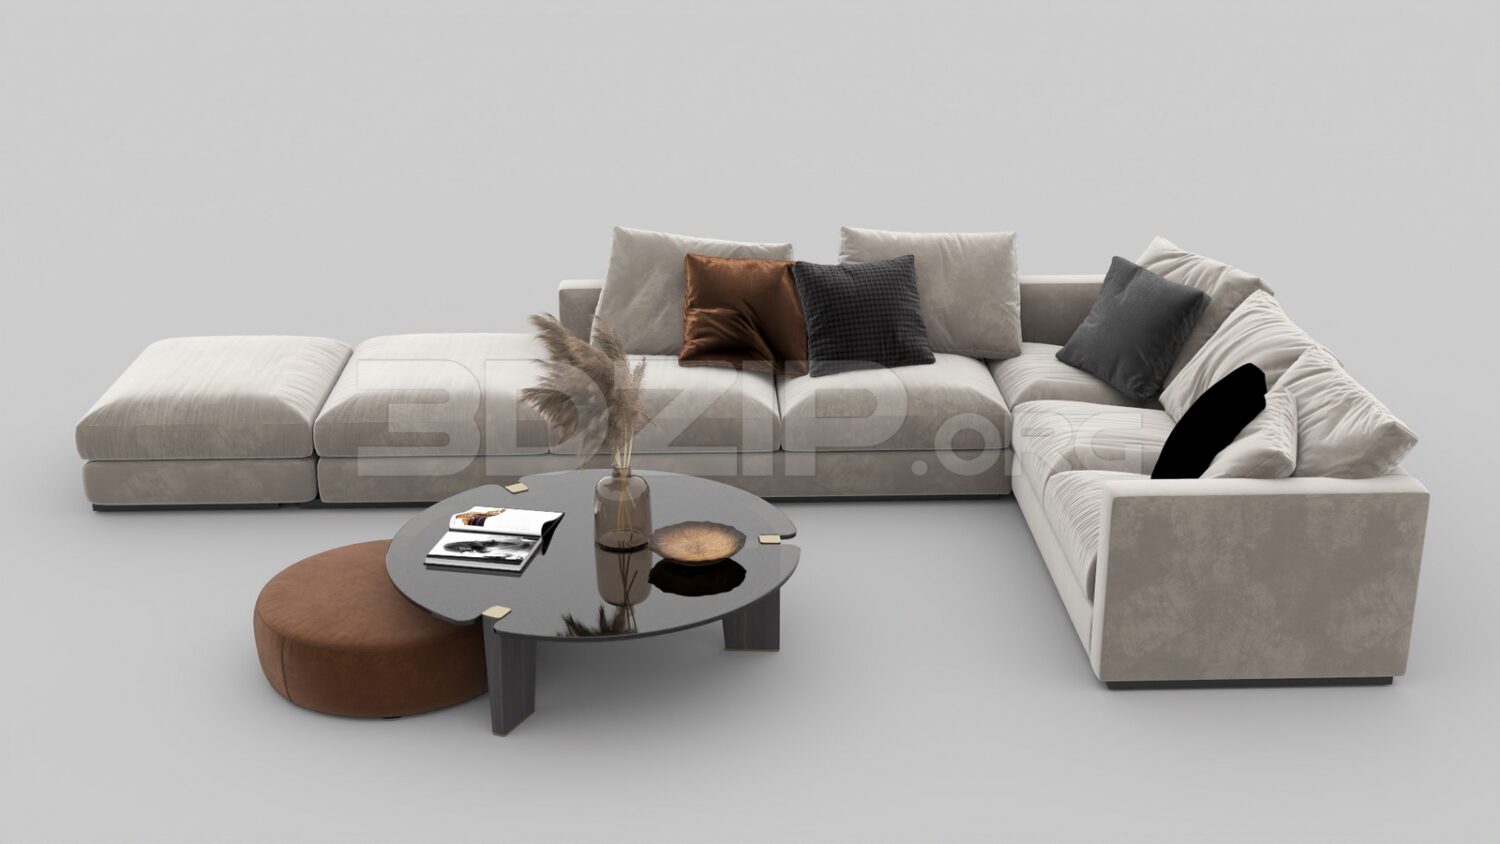 4716. Free 3D Sofa Model Download